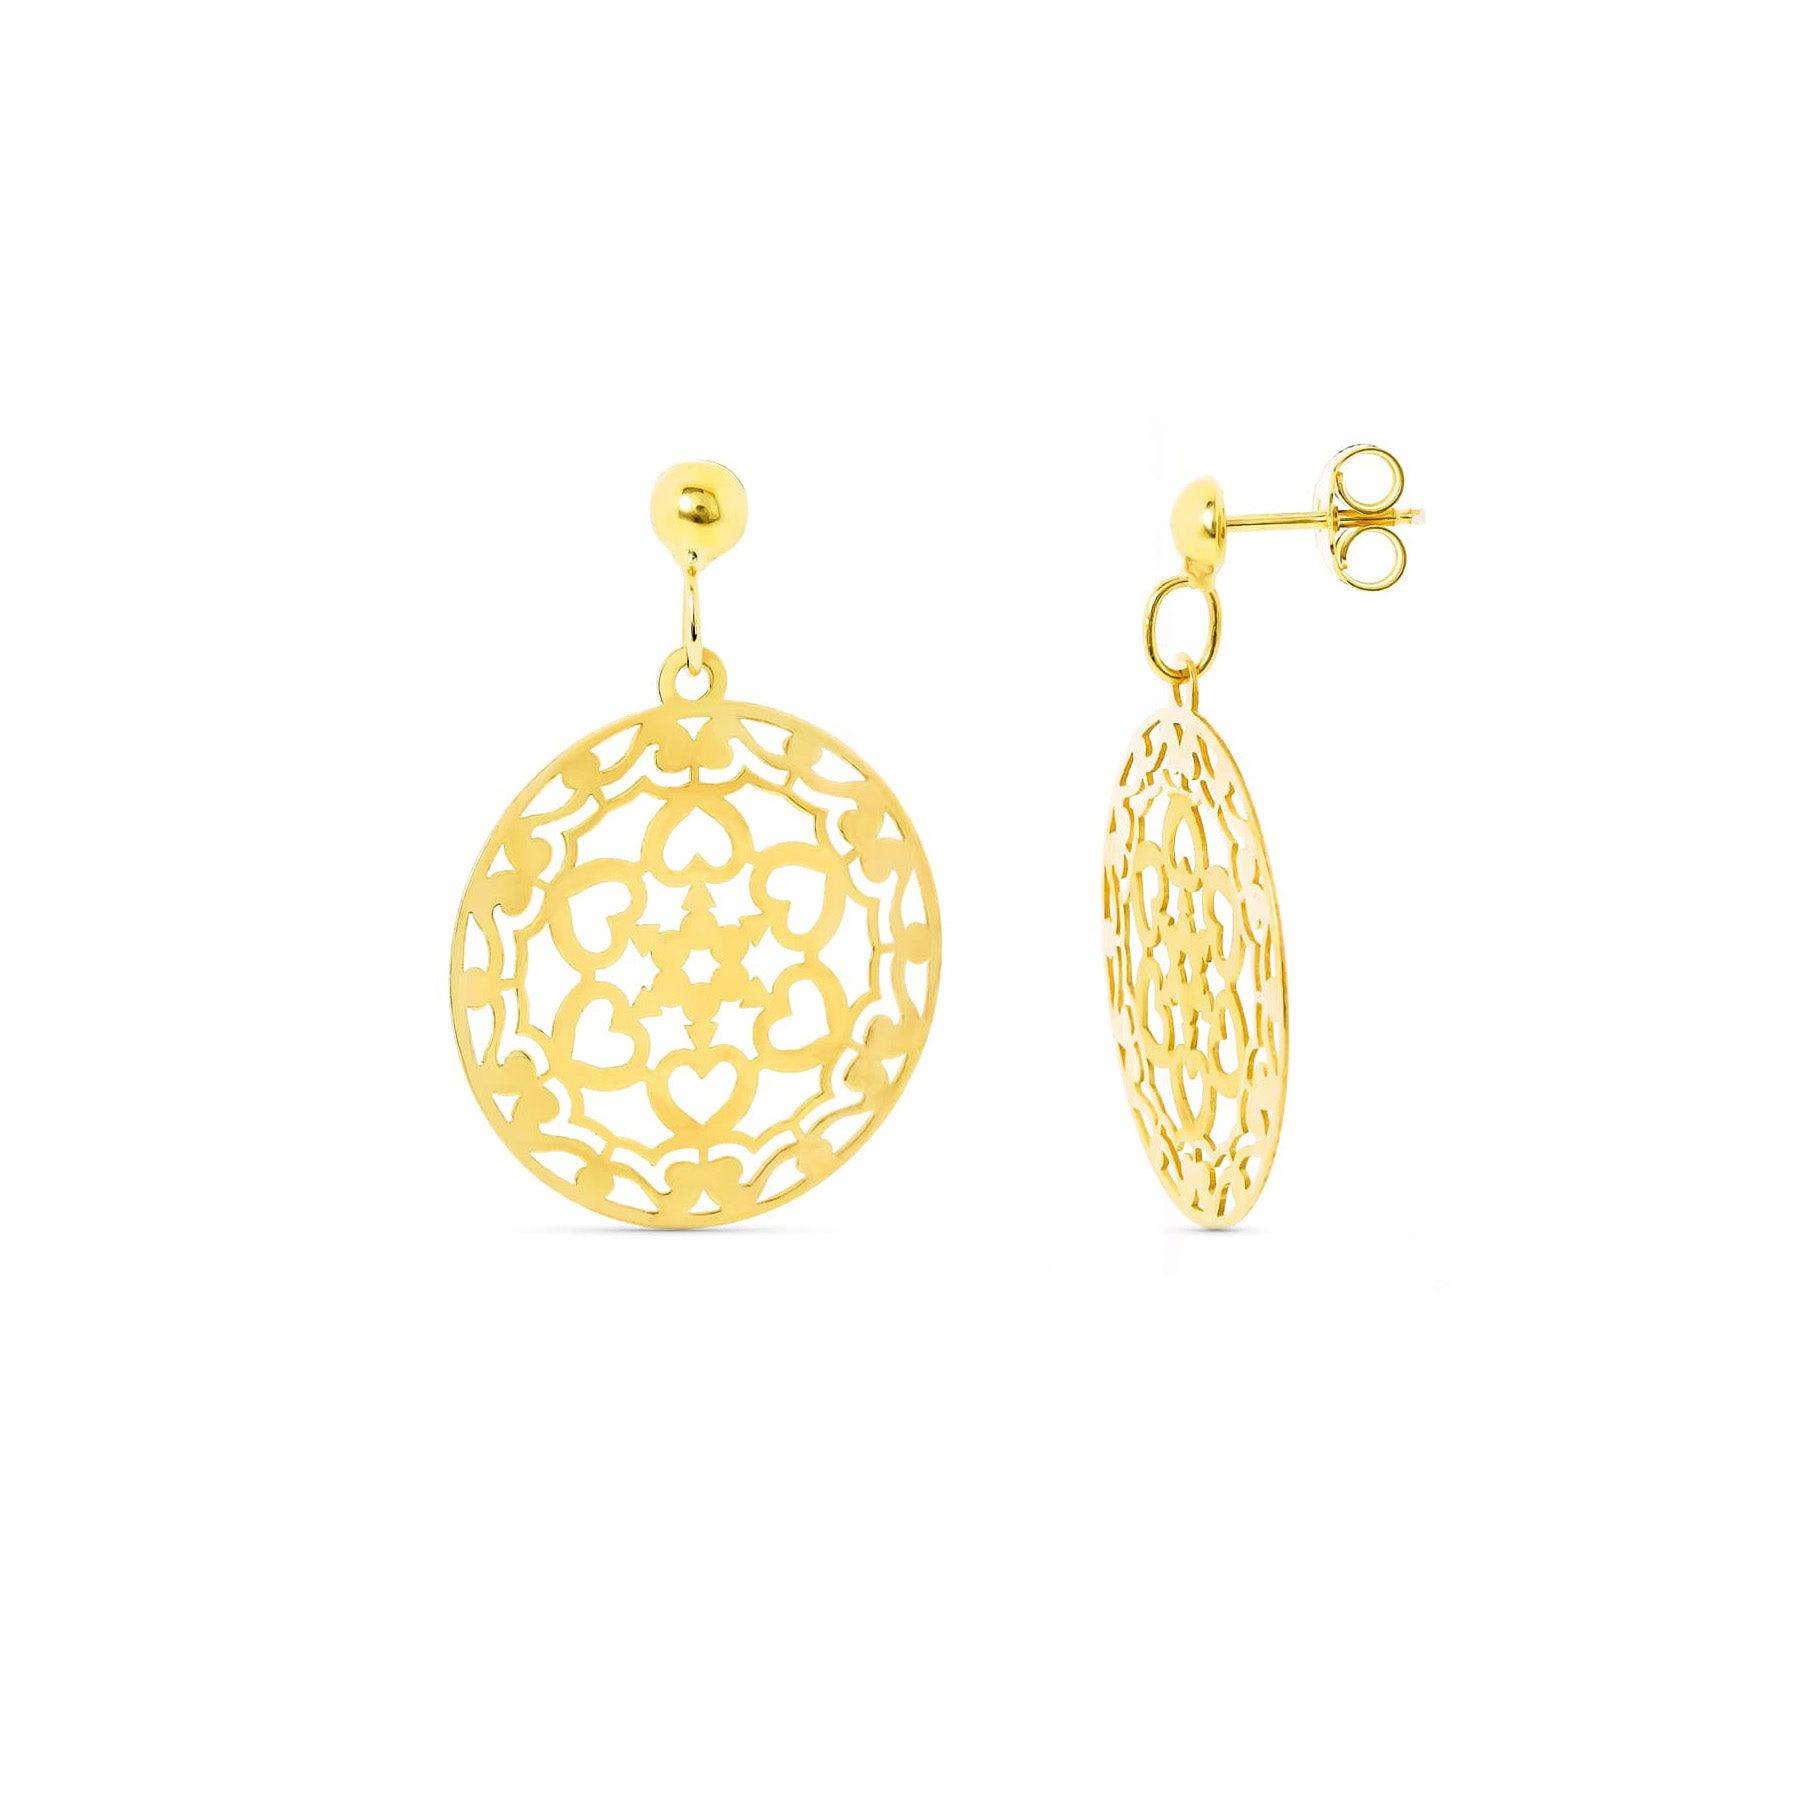 Boucles d'oreilles "Lumière" en or jaune 18 carats, ajourées étoile - Maison Gabriel